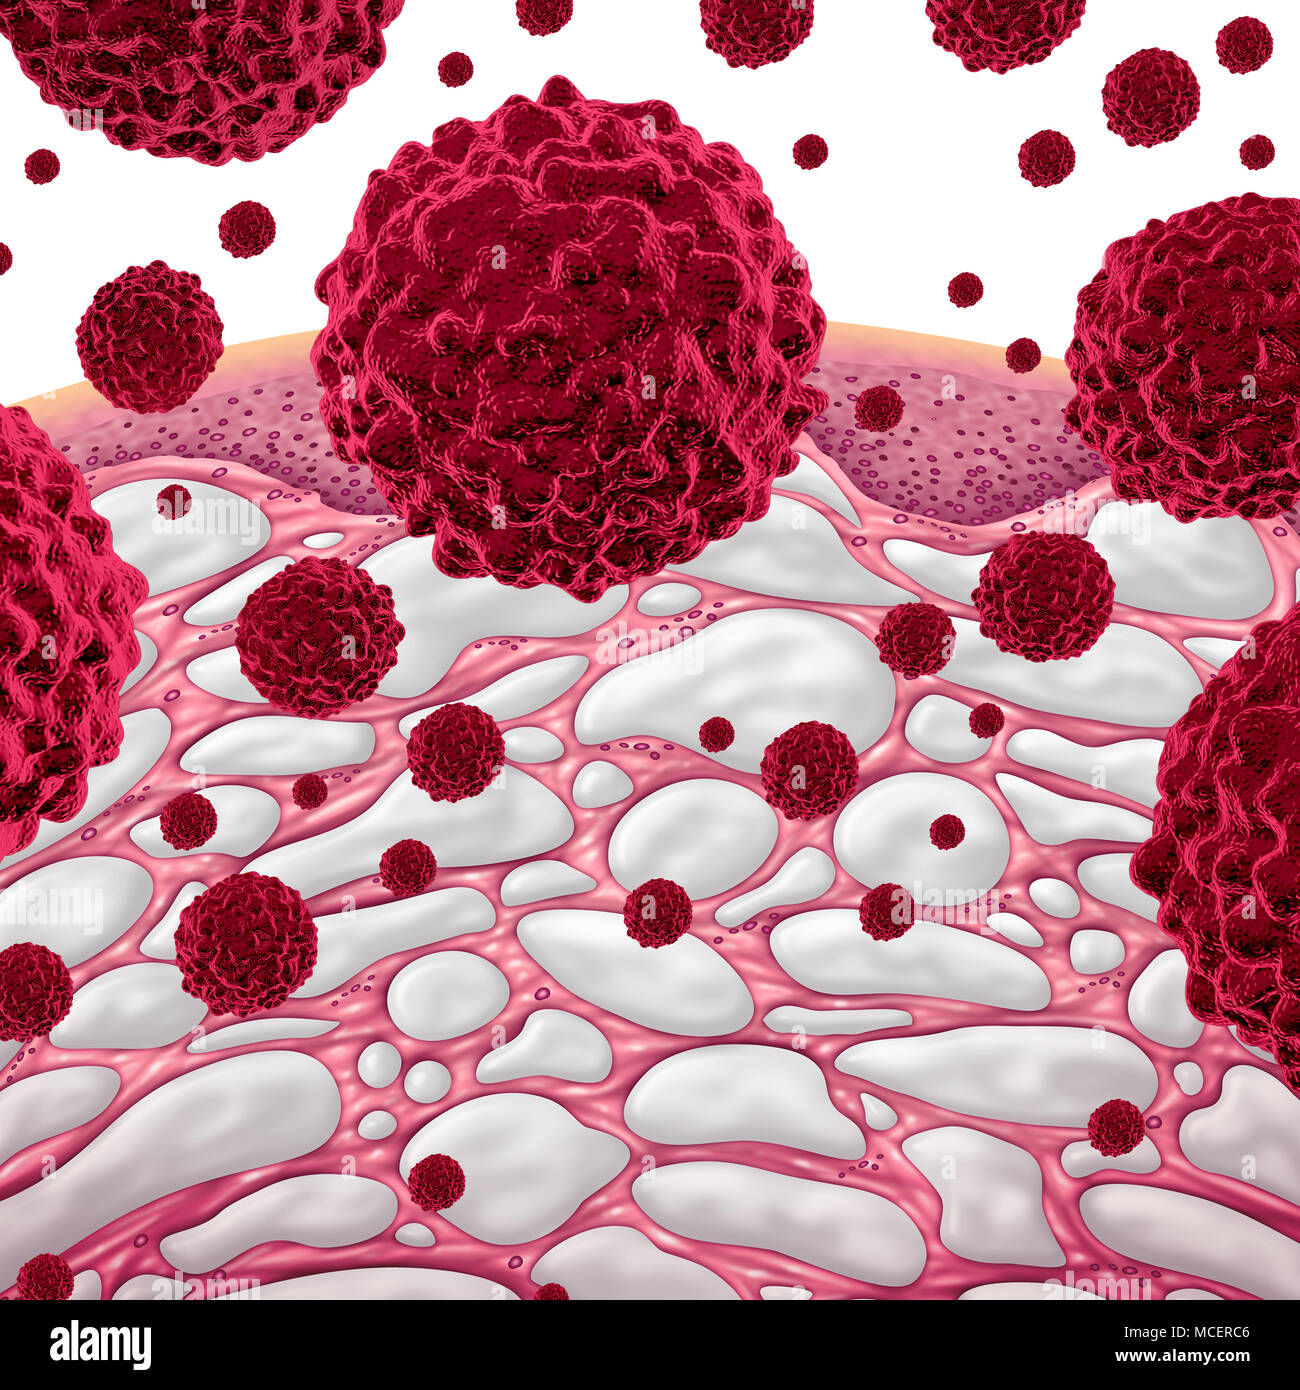 Interstice, et le cancer avec du tissu conjonctif comme concept comparments remplies de liquide, comme une partie du corps humain conceptuel microscopiques de cel Banque D'Images